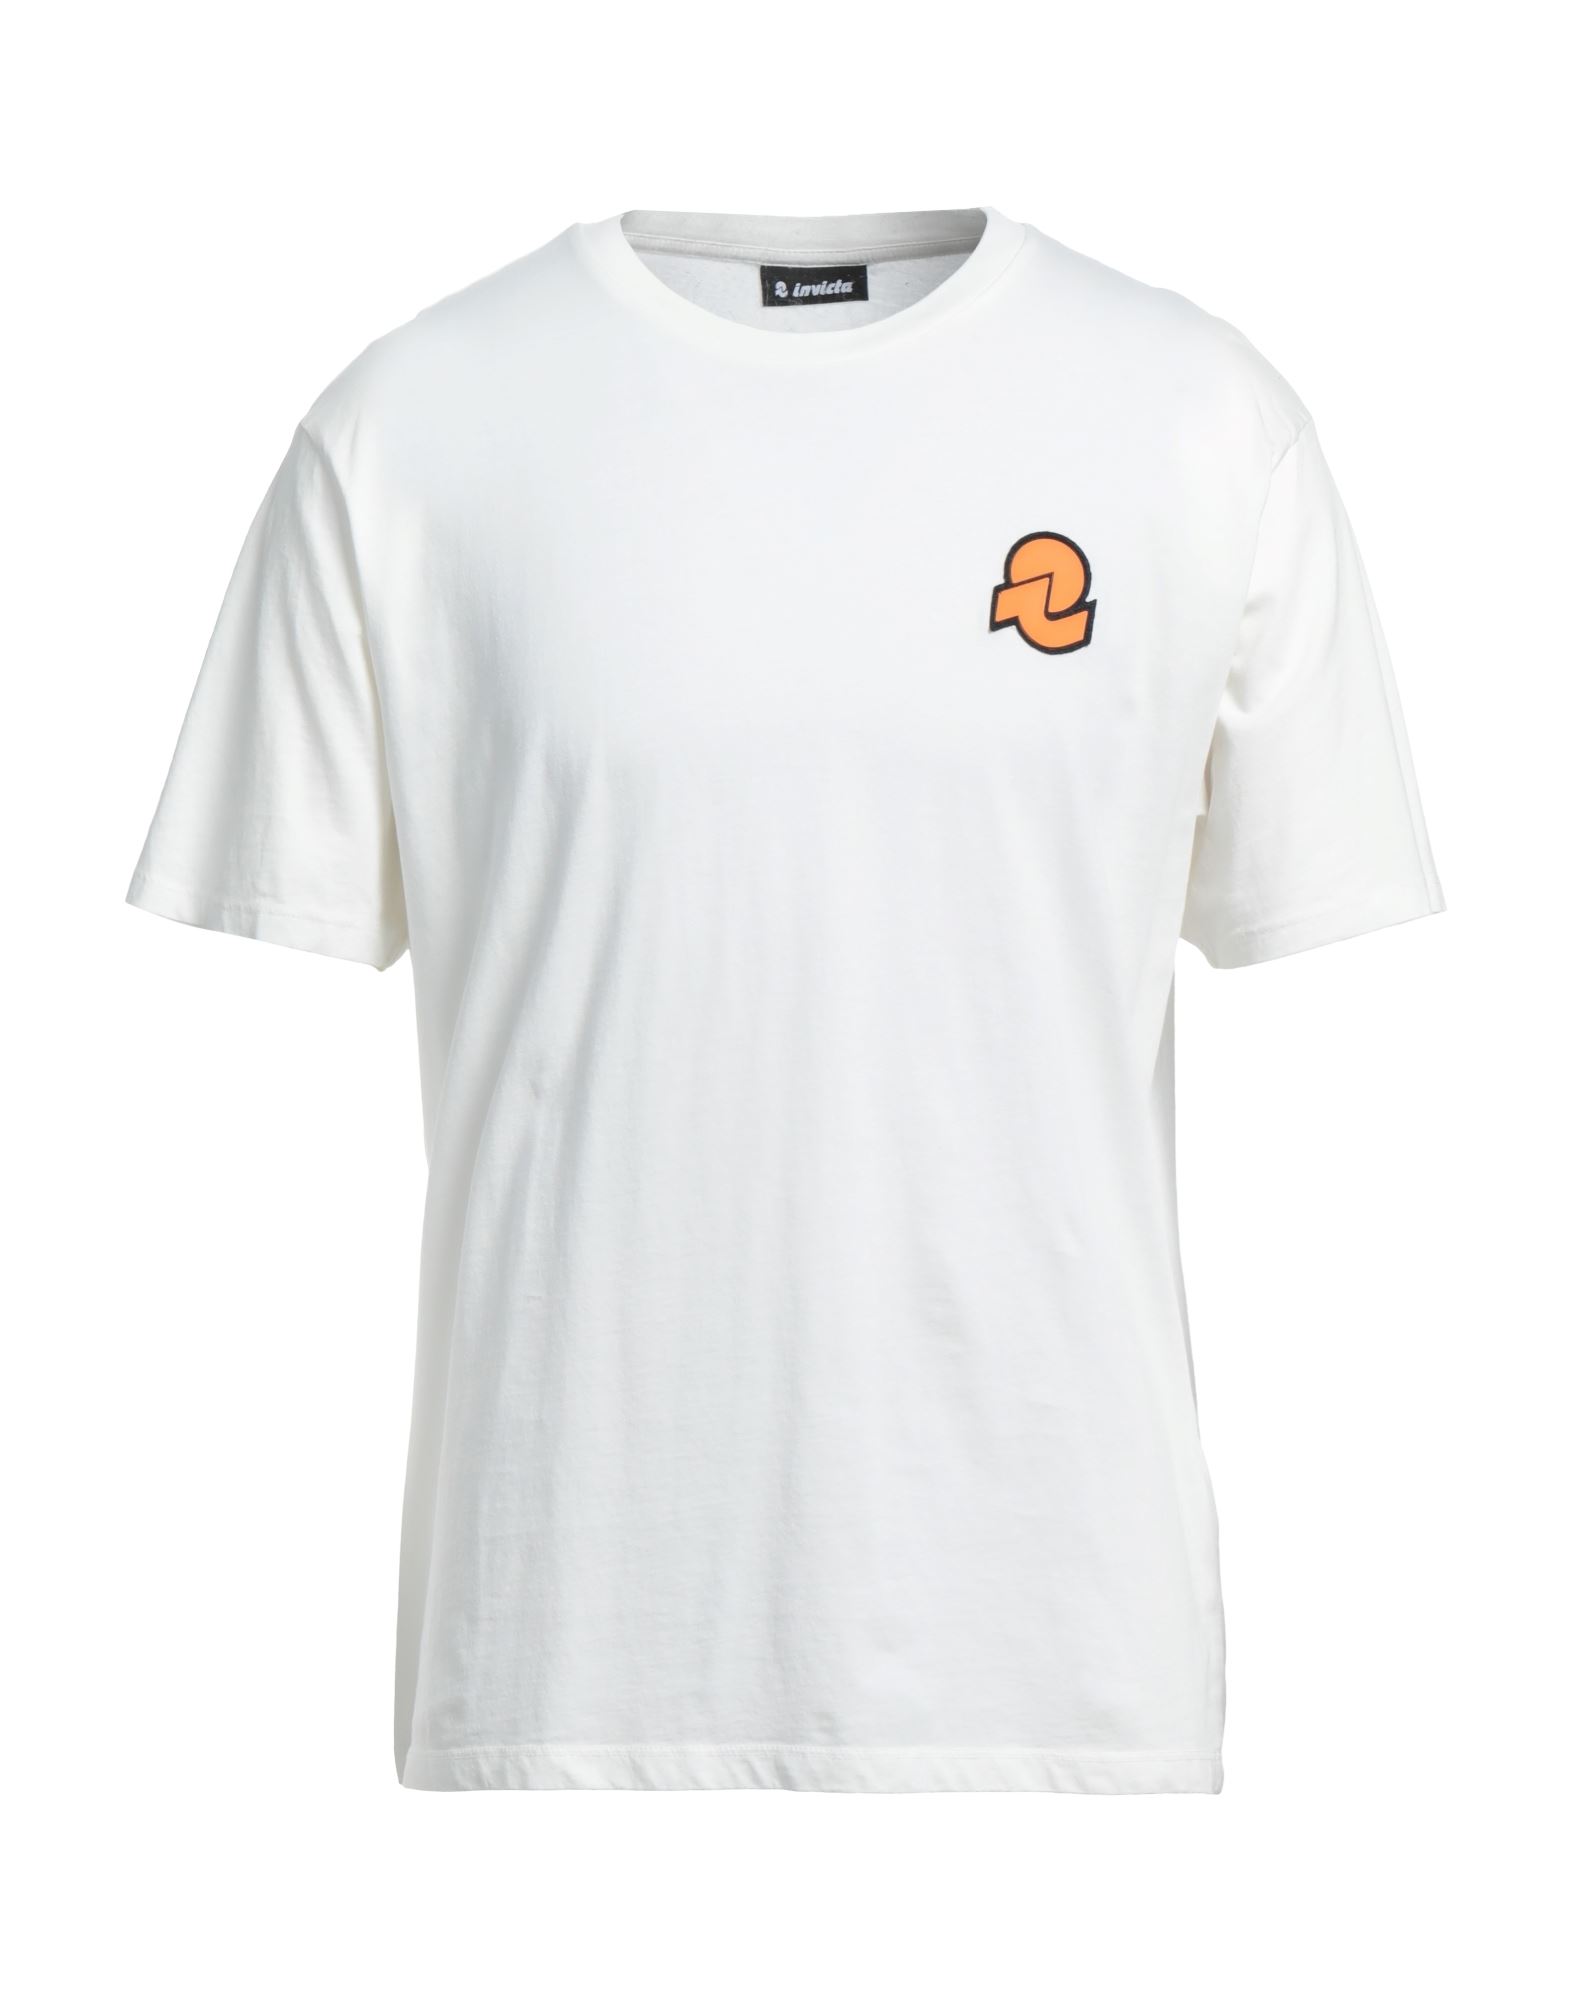 Invicta T-shirts In White